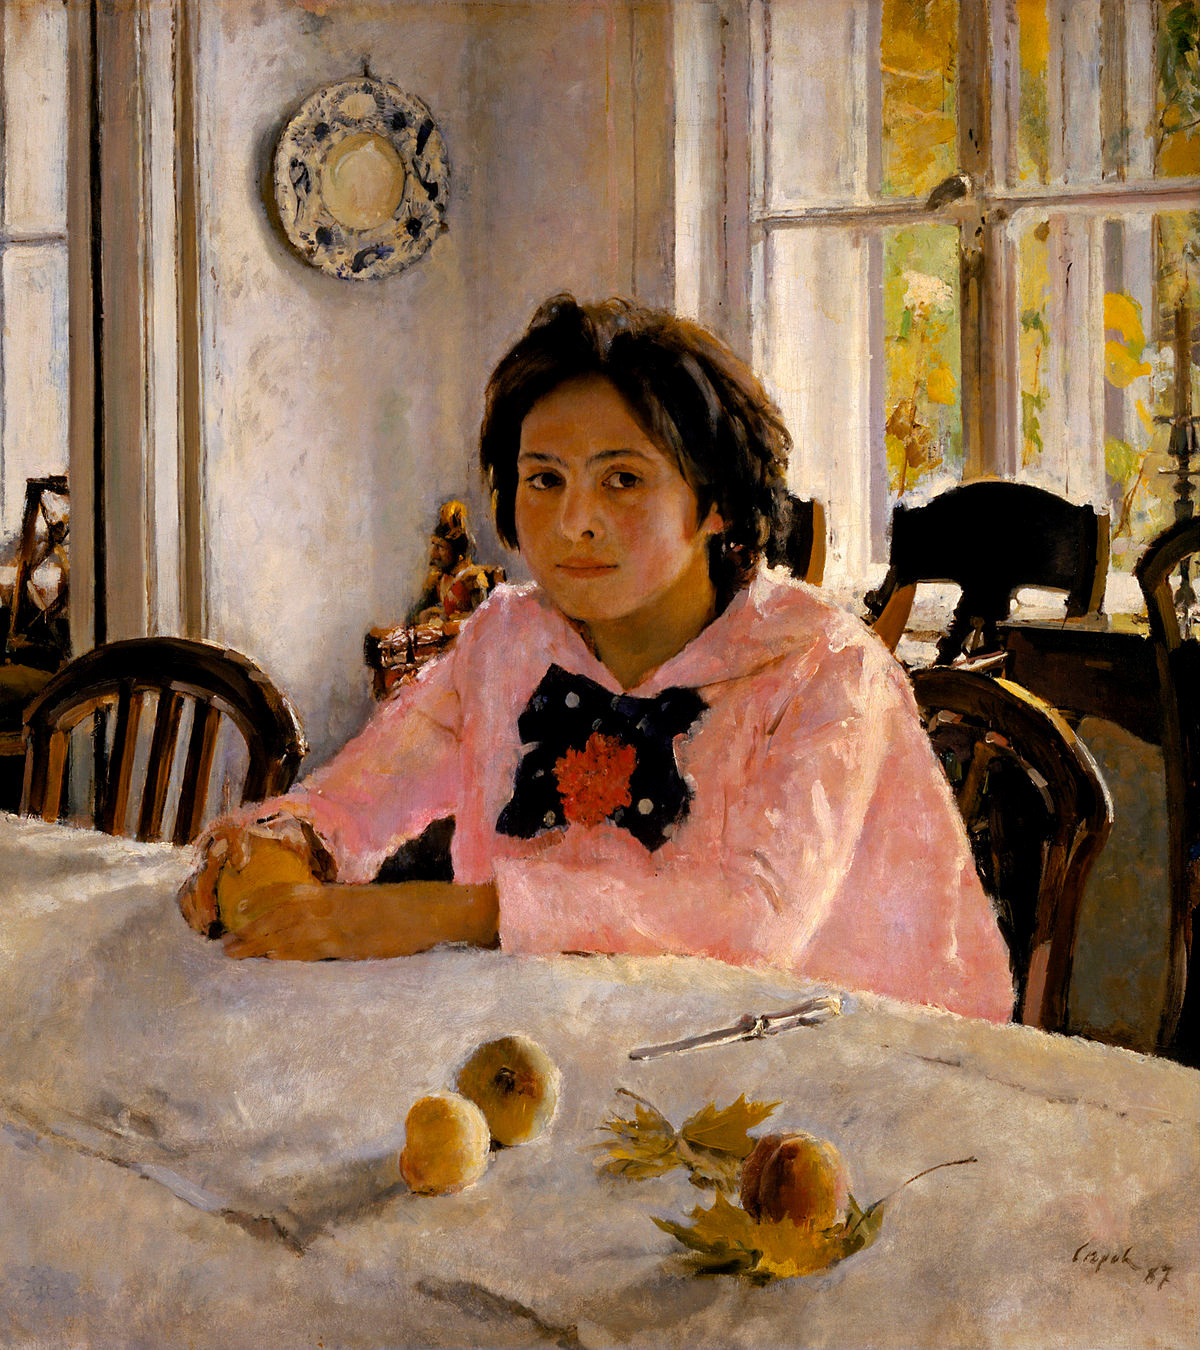 ヴァレンティン・セローフ作『桃を持った少女』、1887年